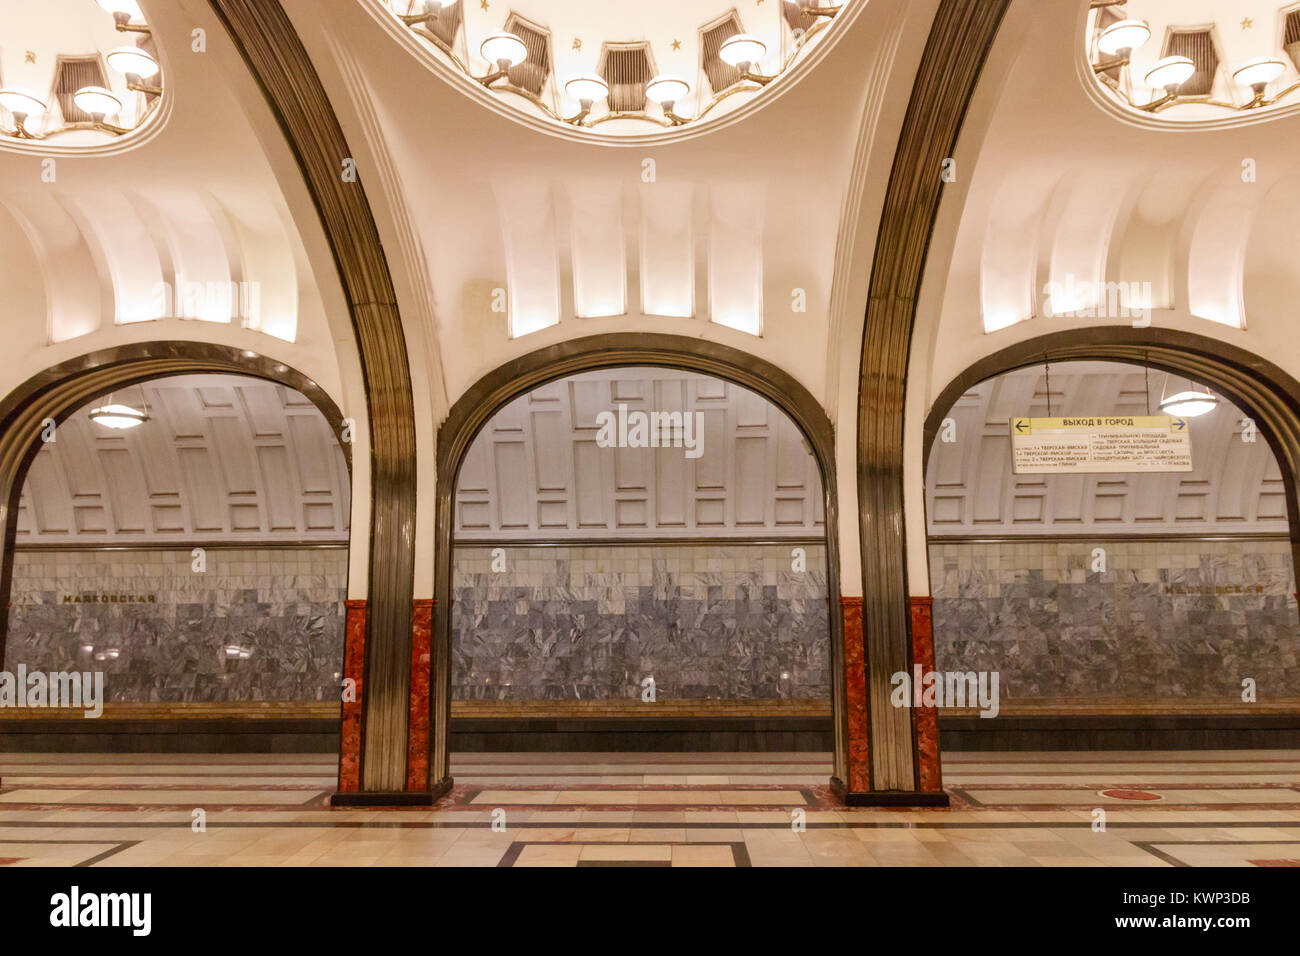 Piattaforma della stazione Mayakovskaya, una delle più famose stazioni della metropolitana di Mosca parte della linea Zamoskvoretskaya. Mosca, Russia. Foto Stock